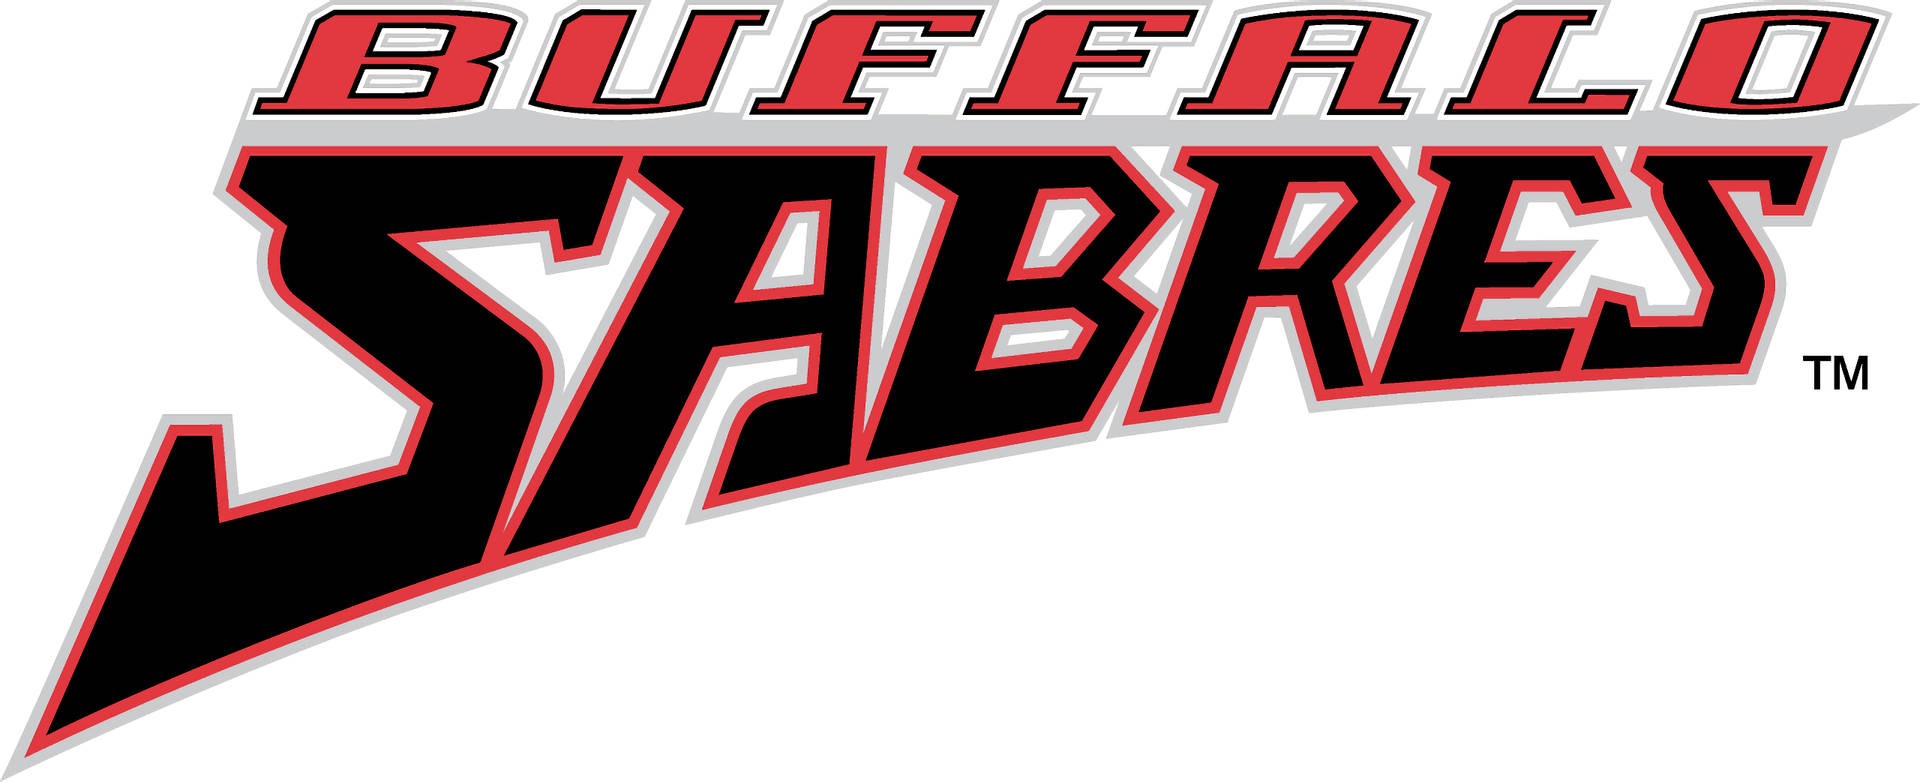 Buffalo Sabres Name